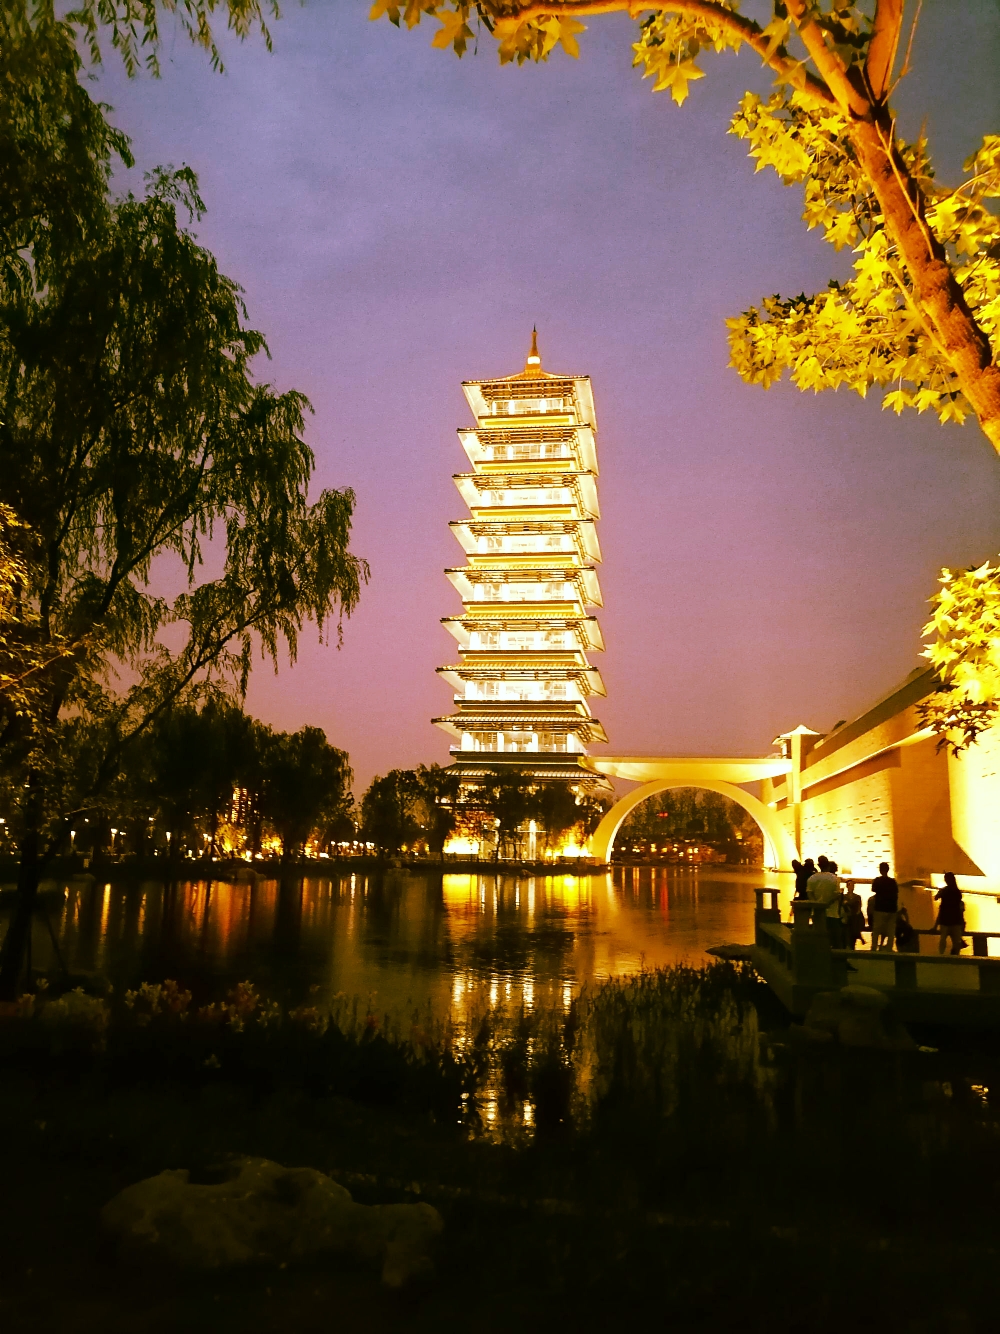 蝶恋花:扬州中国大运河博物馆夜景